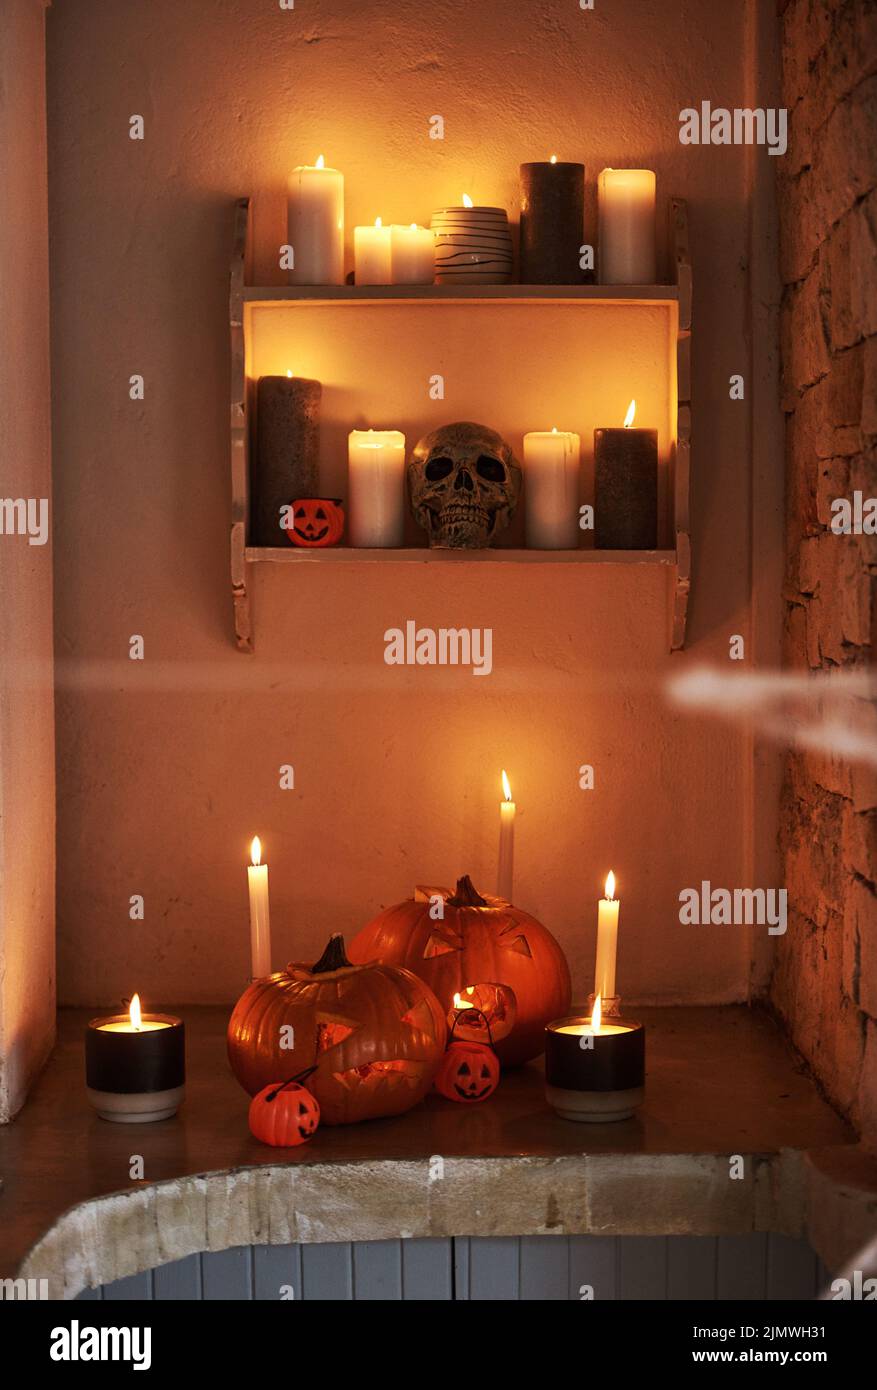 Je ängstiger, desto besser. Stillleben von geschnitzten Kürbissen und brennenden Kerzen zusammen zur Feier von halloween platziert. Stockfoto